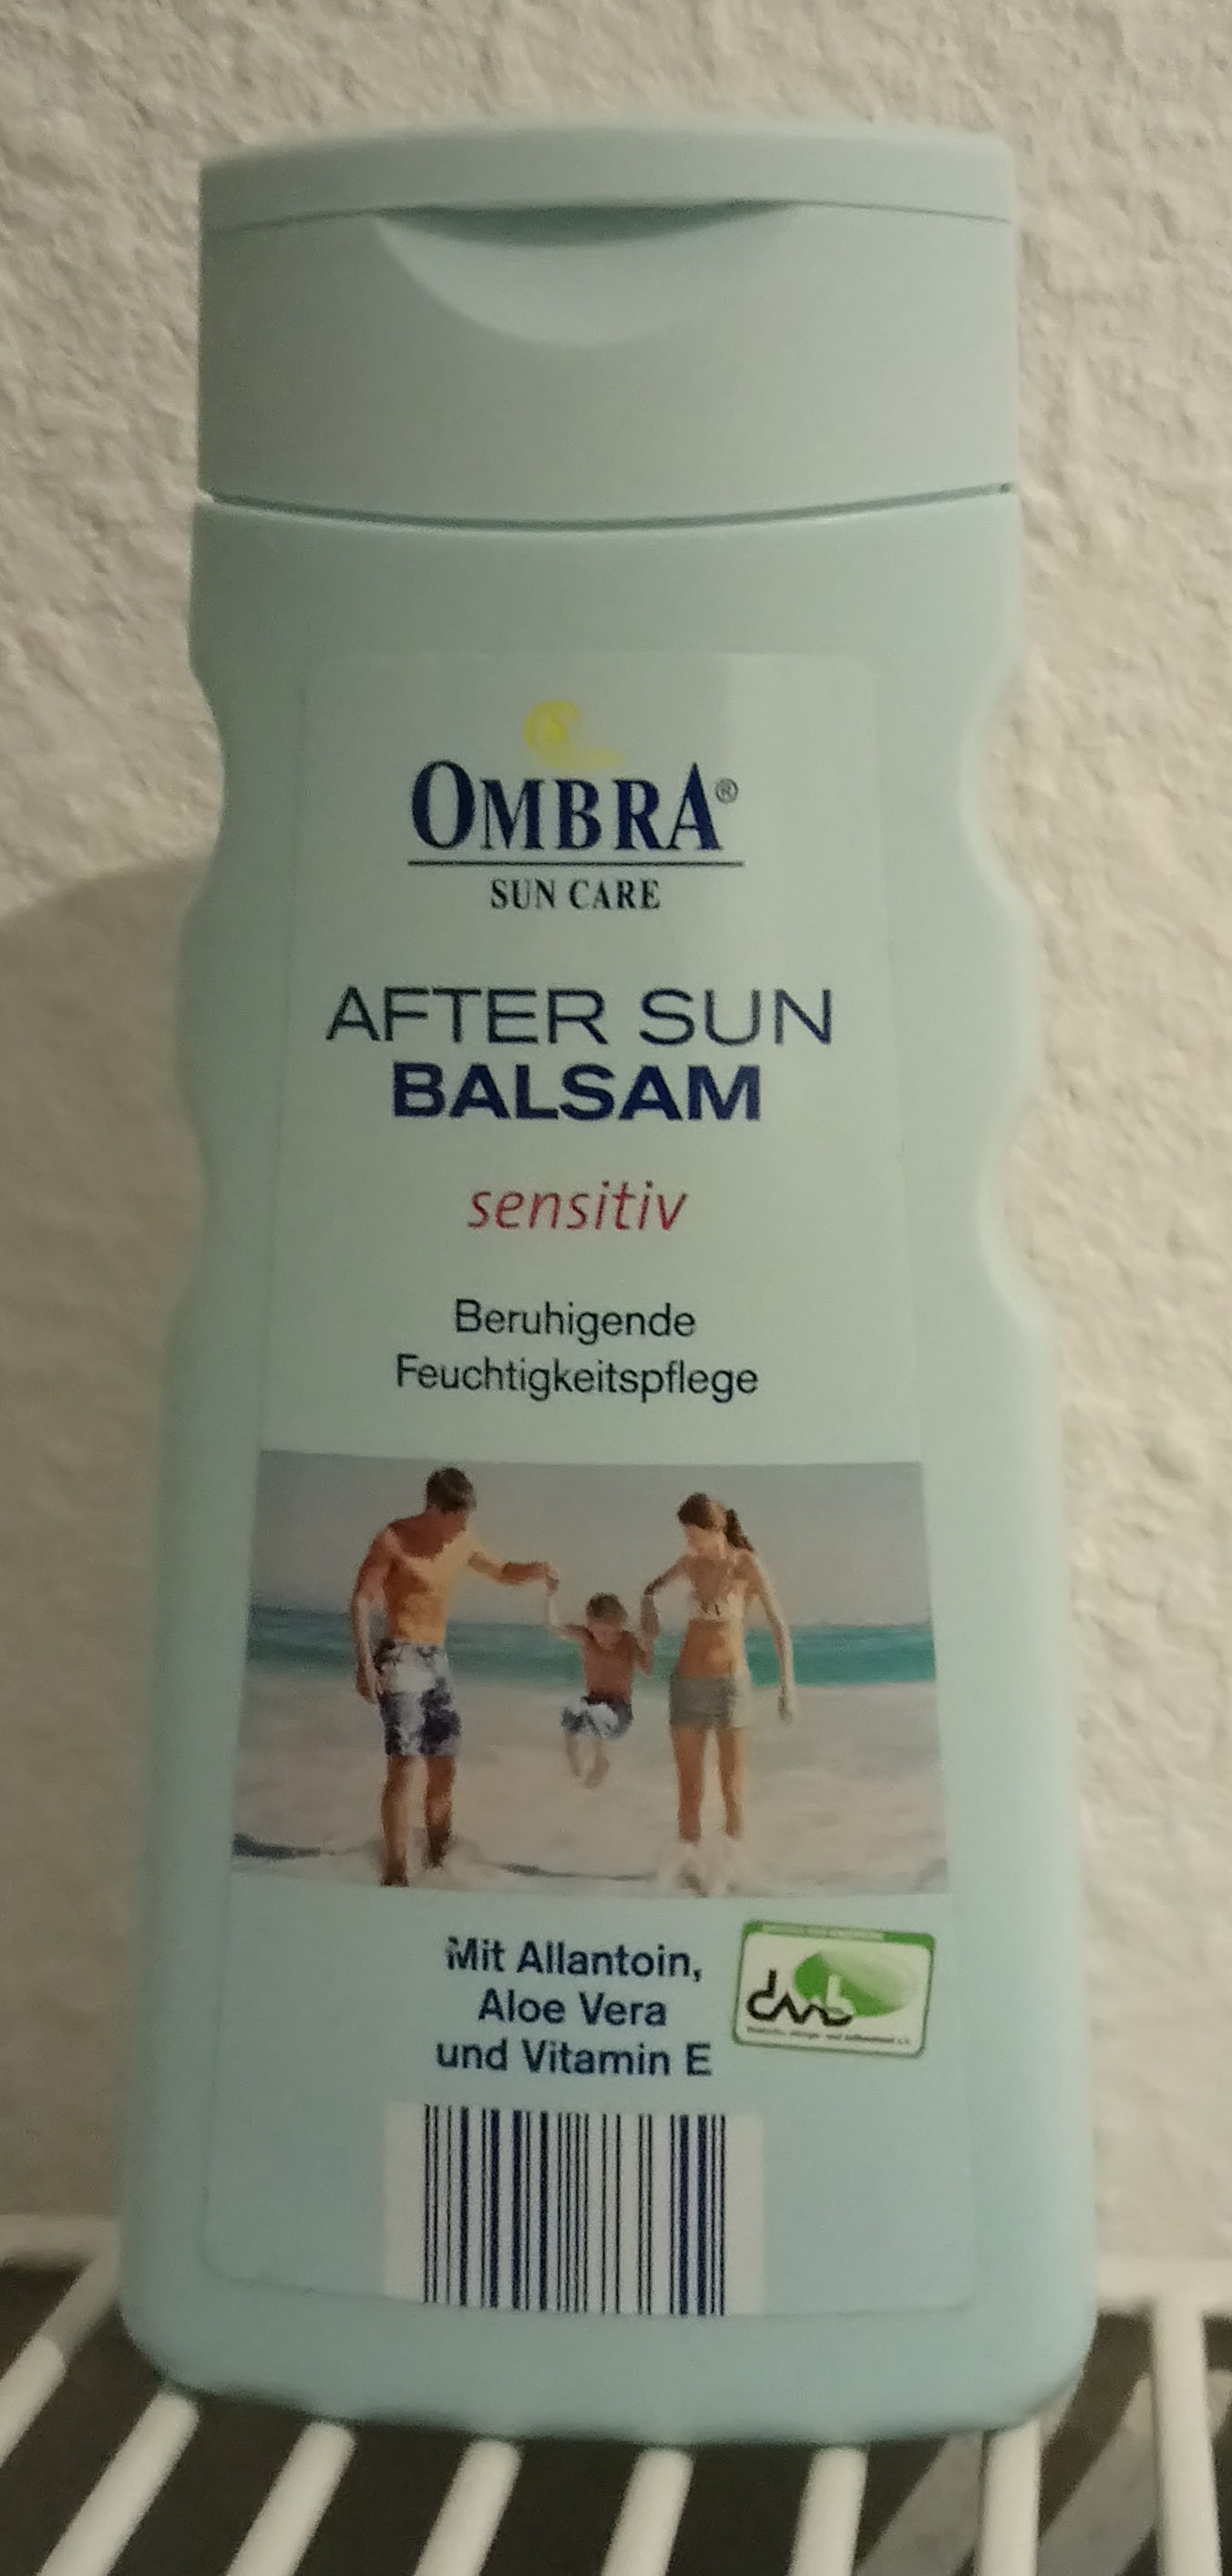 After Sun Balsam - Produkt - de